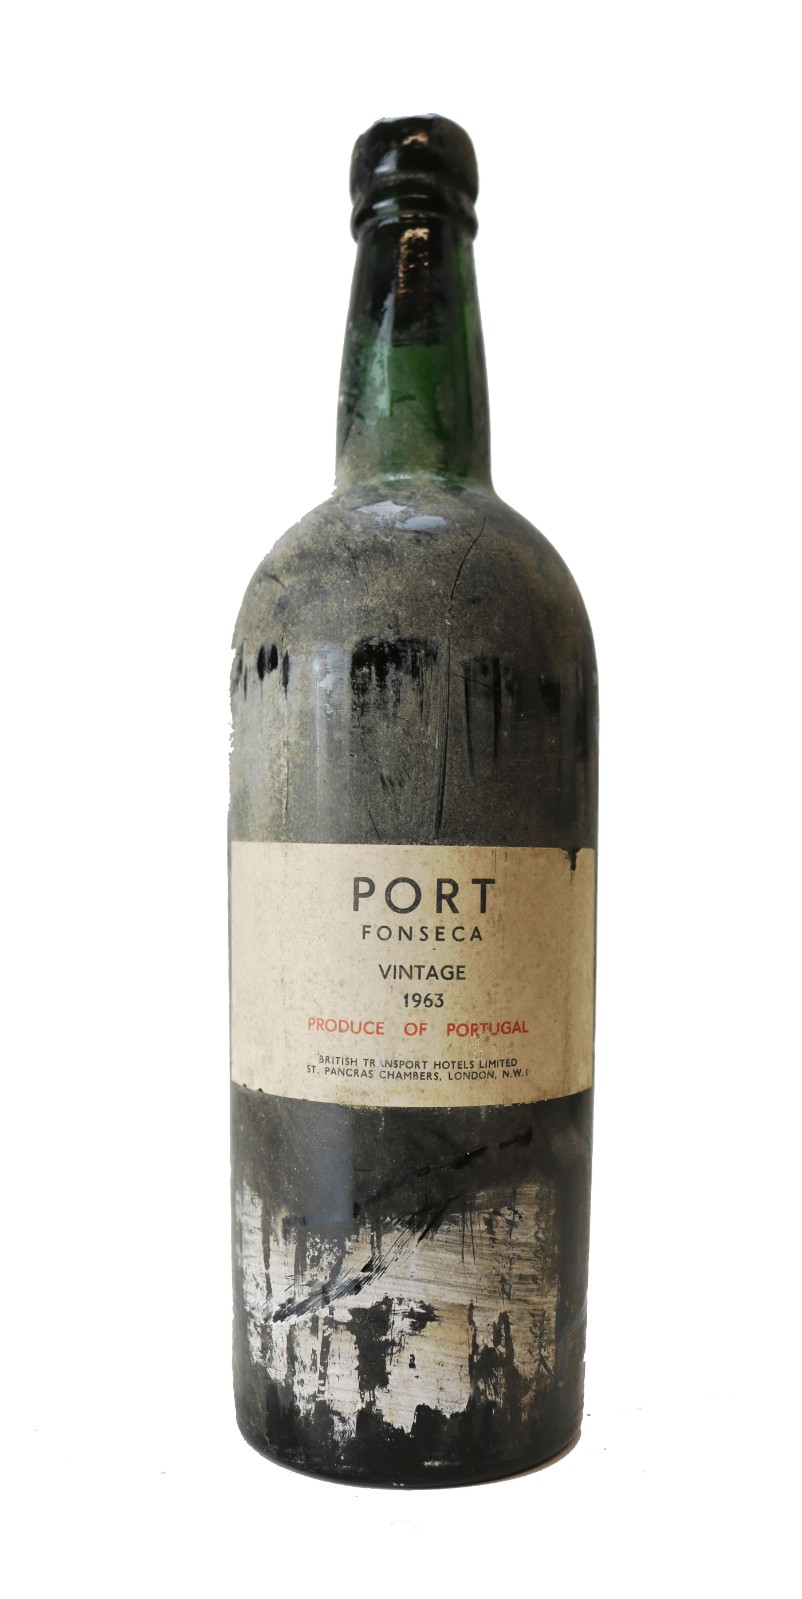 Fonseca Port, Vintage Port, 1963 | Vintage Wine and Port